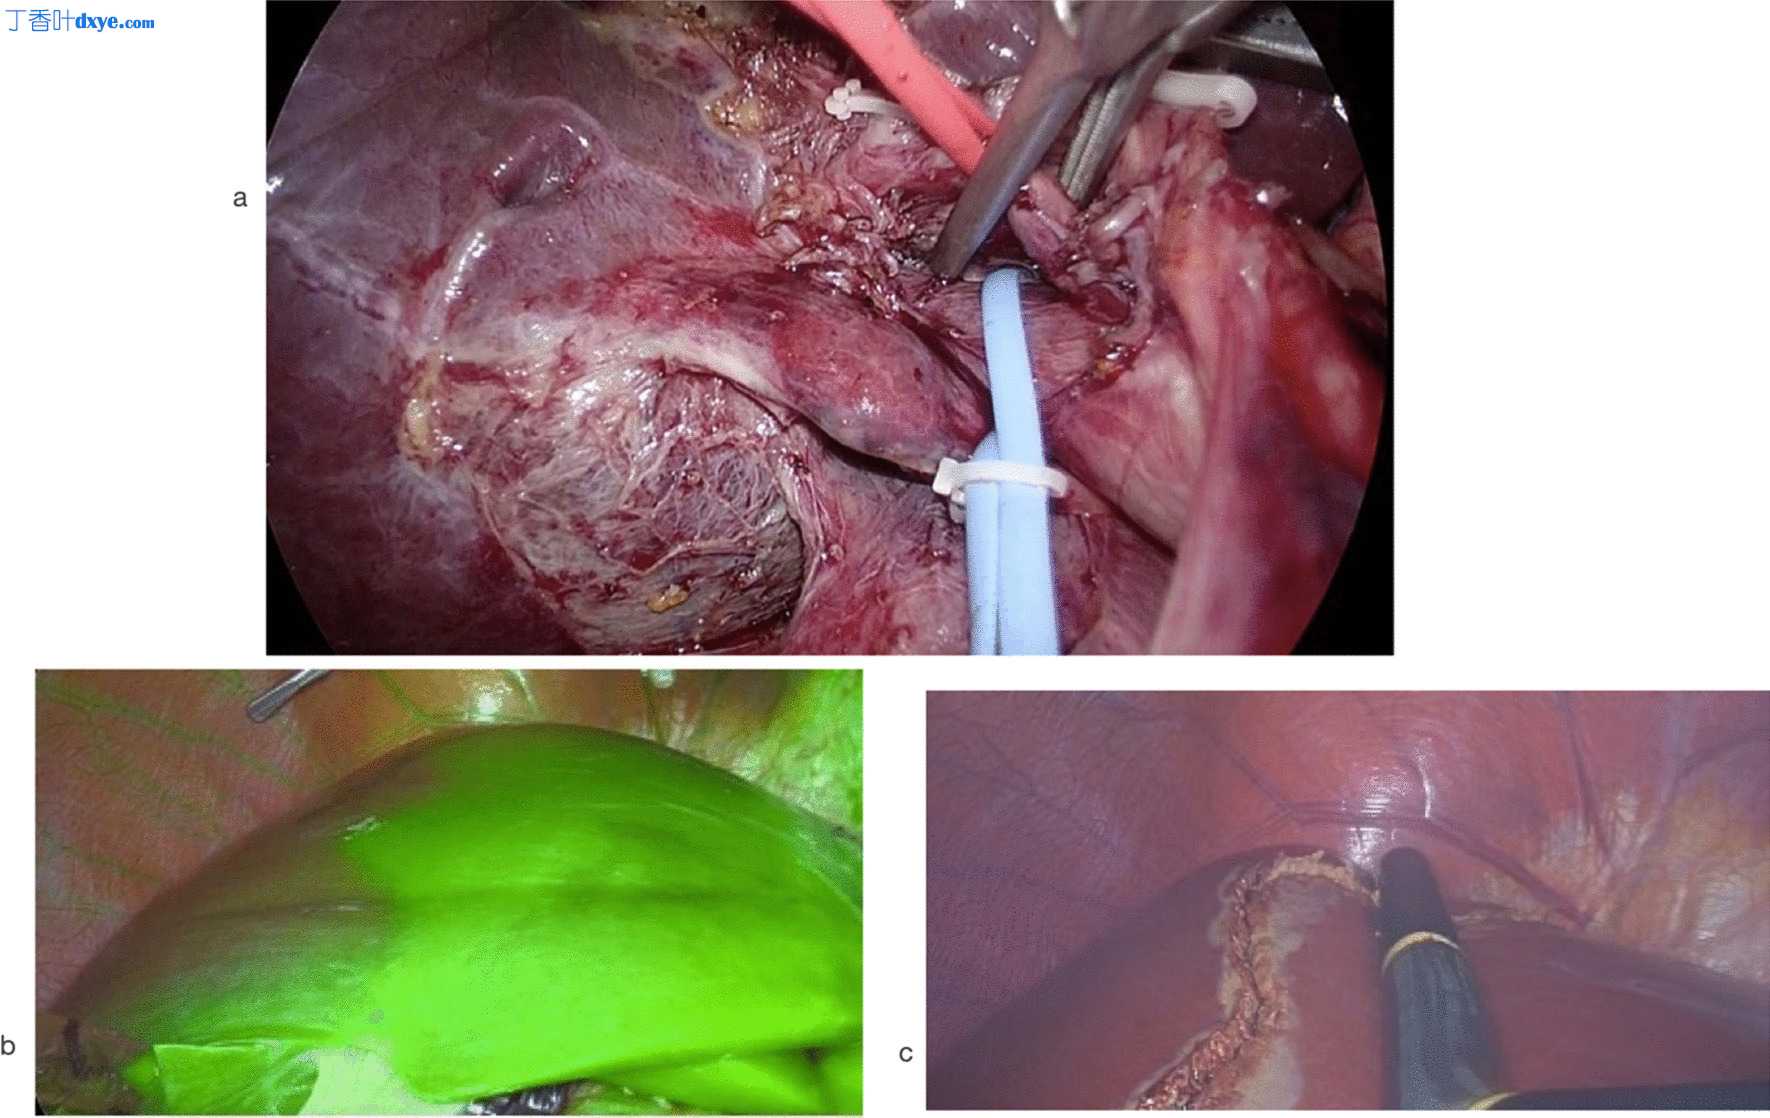 纯腹腔镜和开放供体右肝切除术的比较结果：来自东南亚移植中心的一份报告